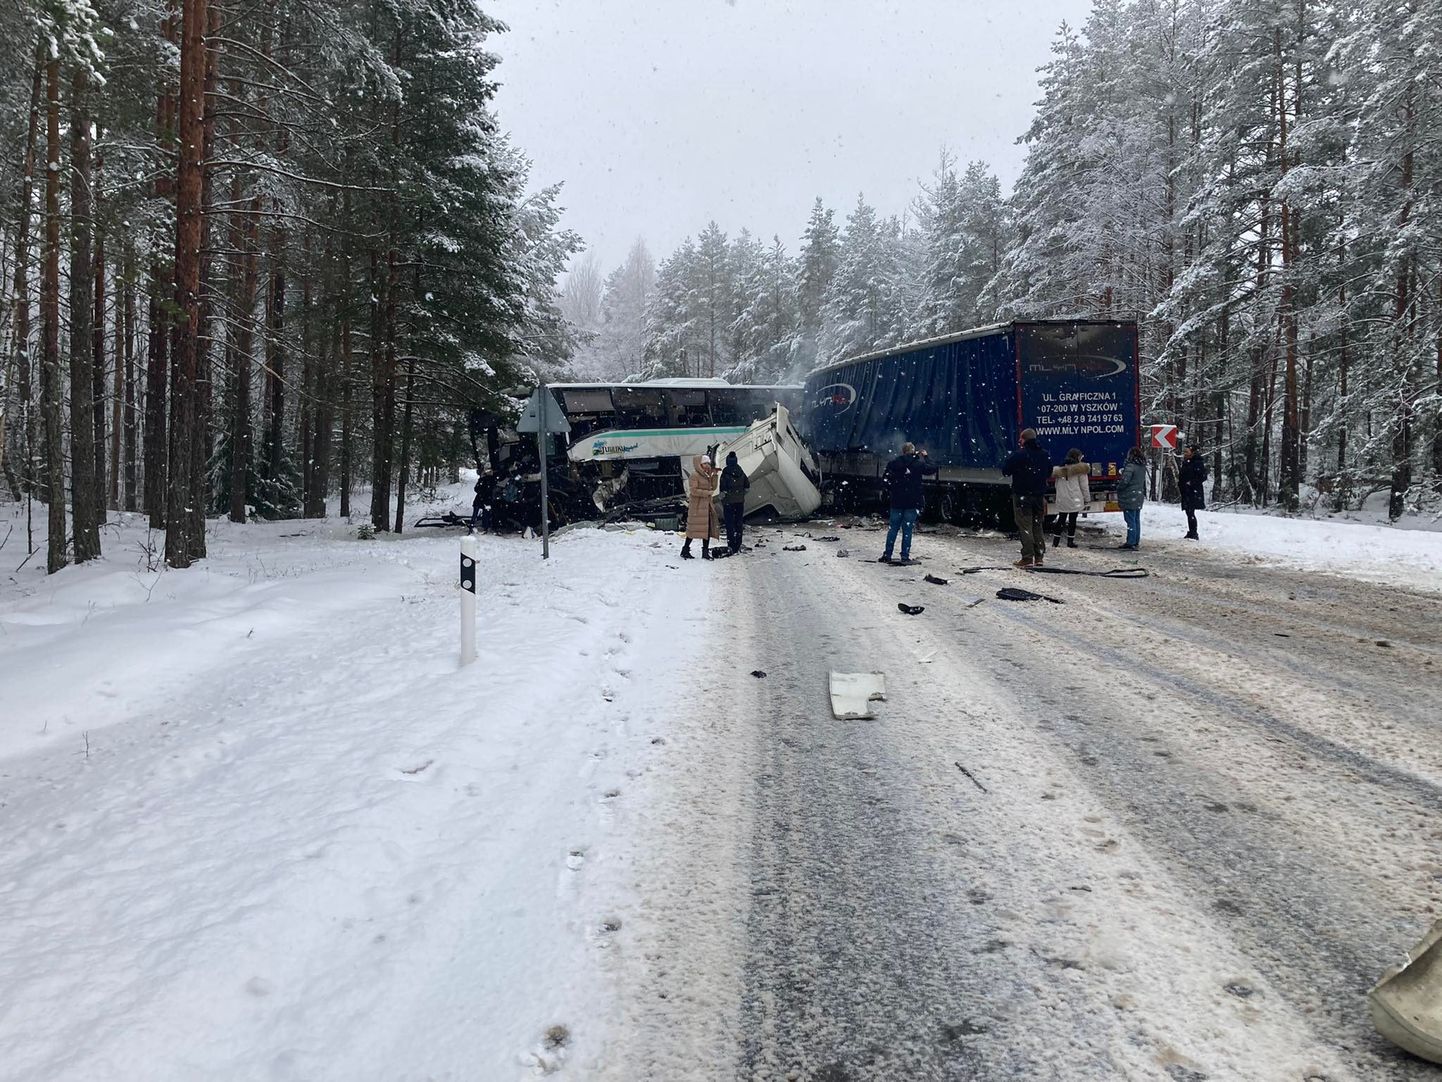 В результате столкновения автобуса и грузовика в Раннапунгерья водители обоих транспортных средств получили тяжелые травмы.